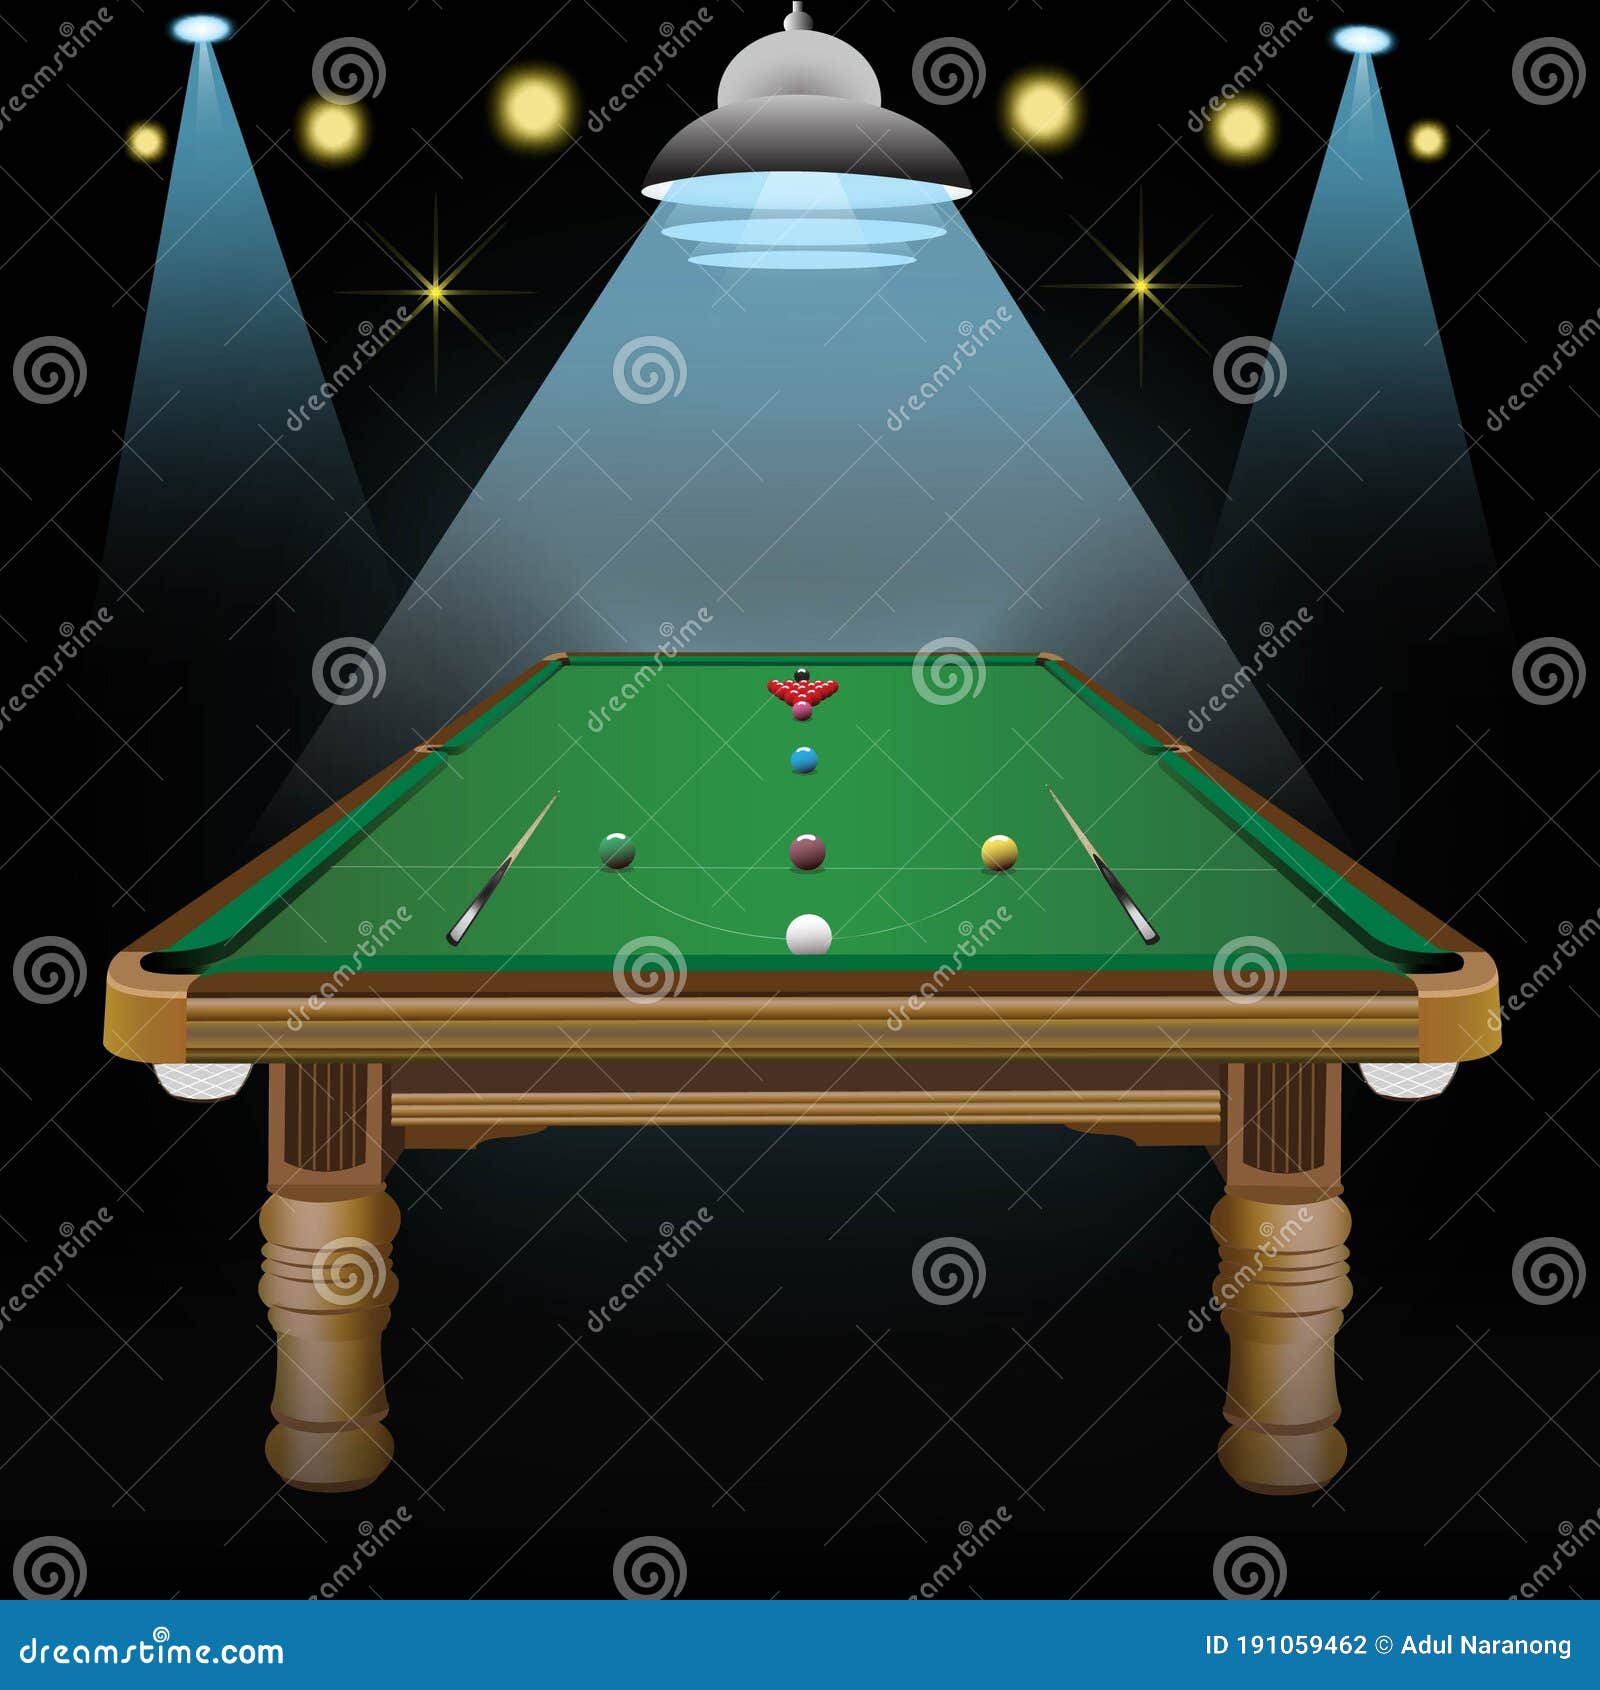 Trilha De Snooker Court Billiards Ilustração Stock - Ilustração de